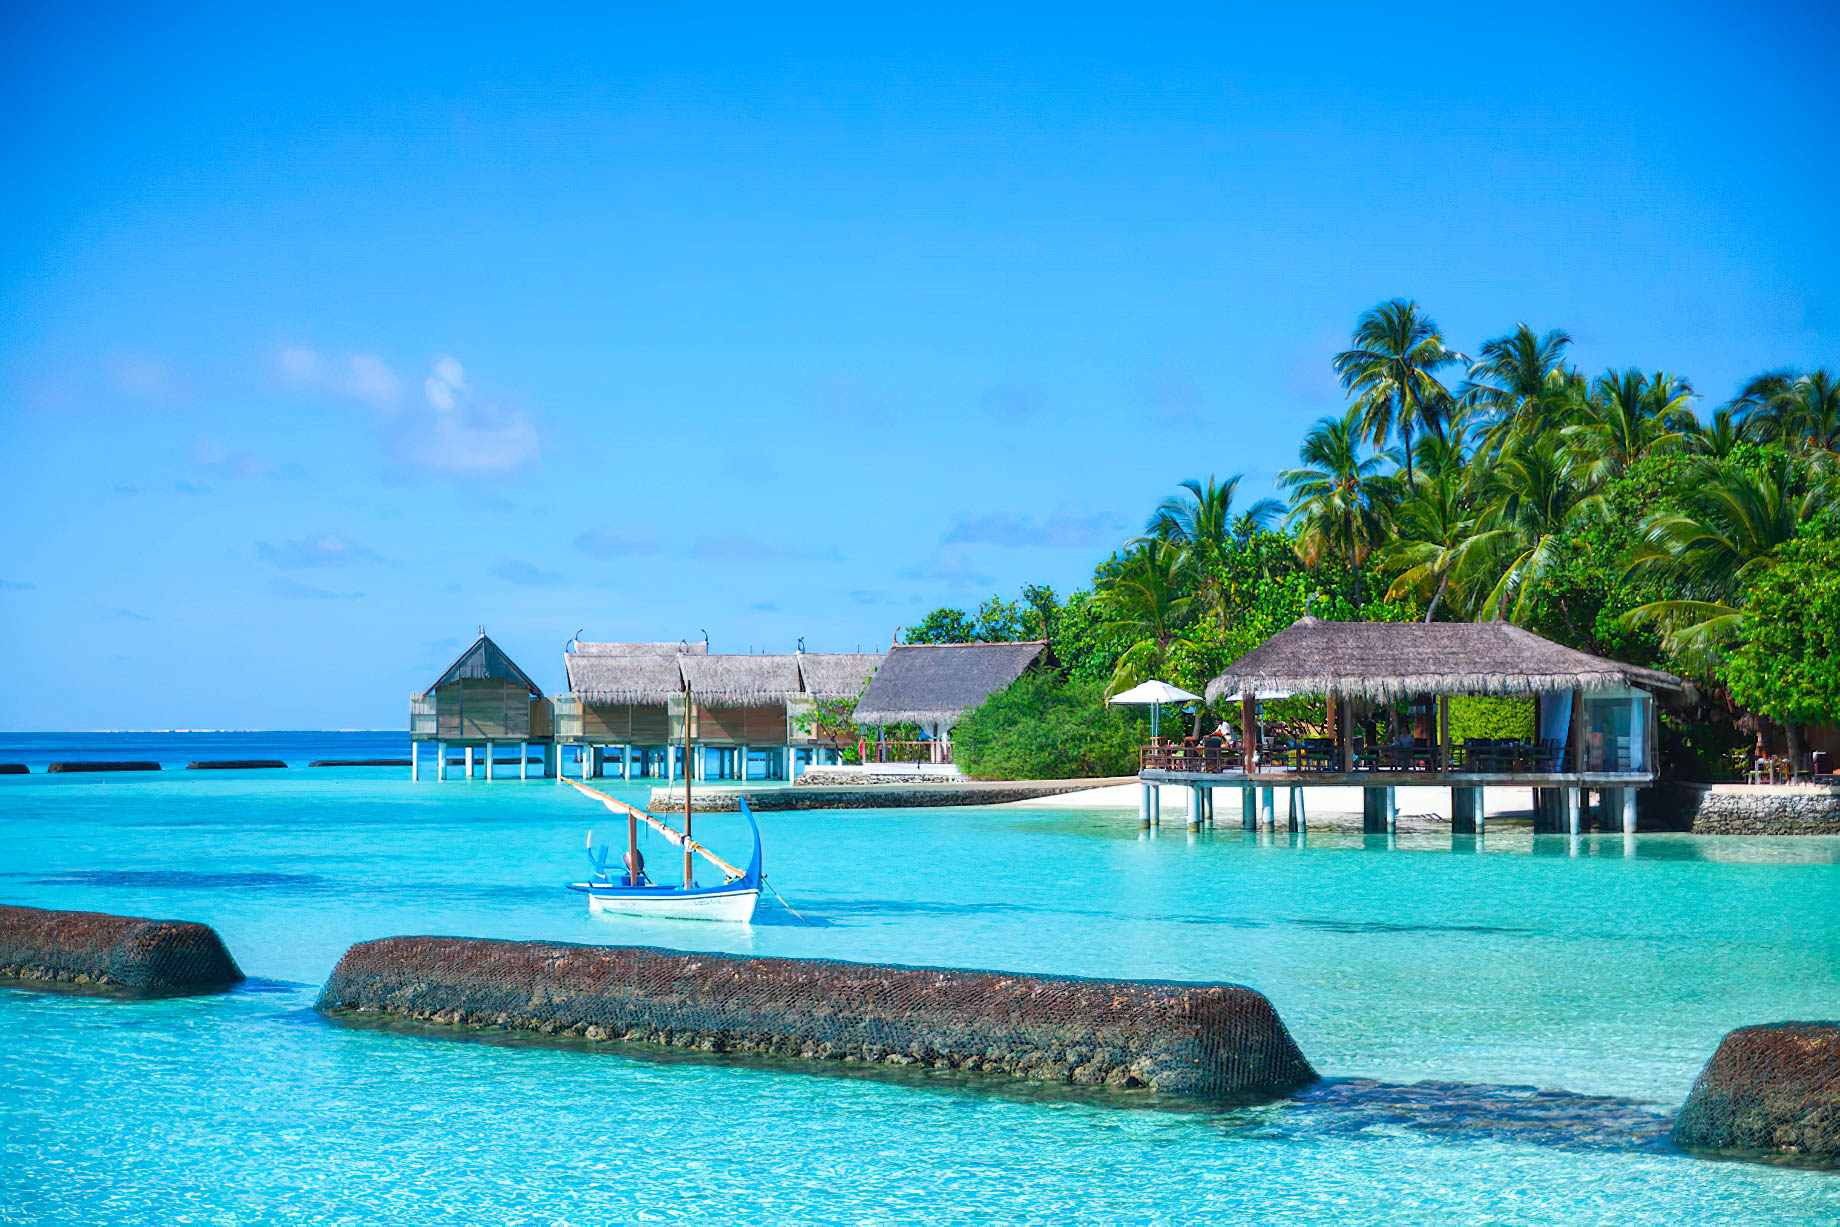 Constance Moofushi Resort – South Ari Atoll, Maldives – Overwater Spa View